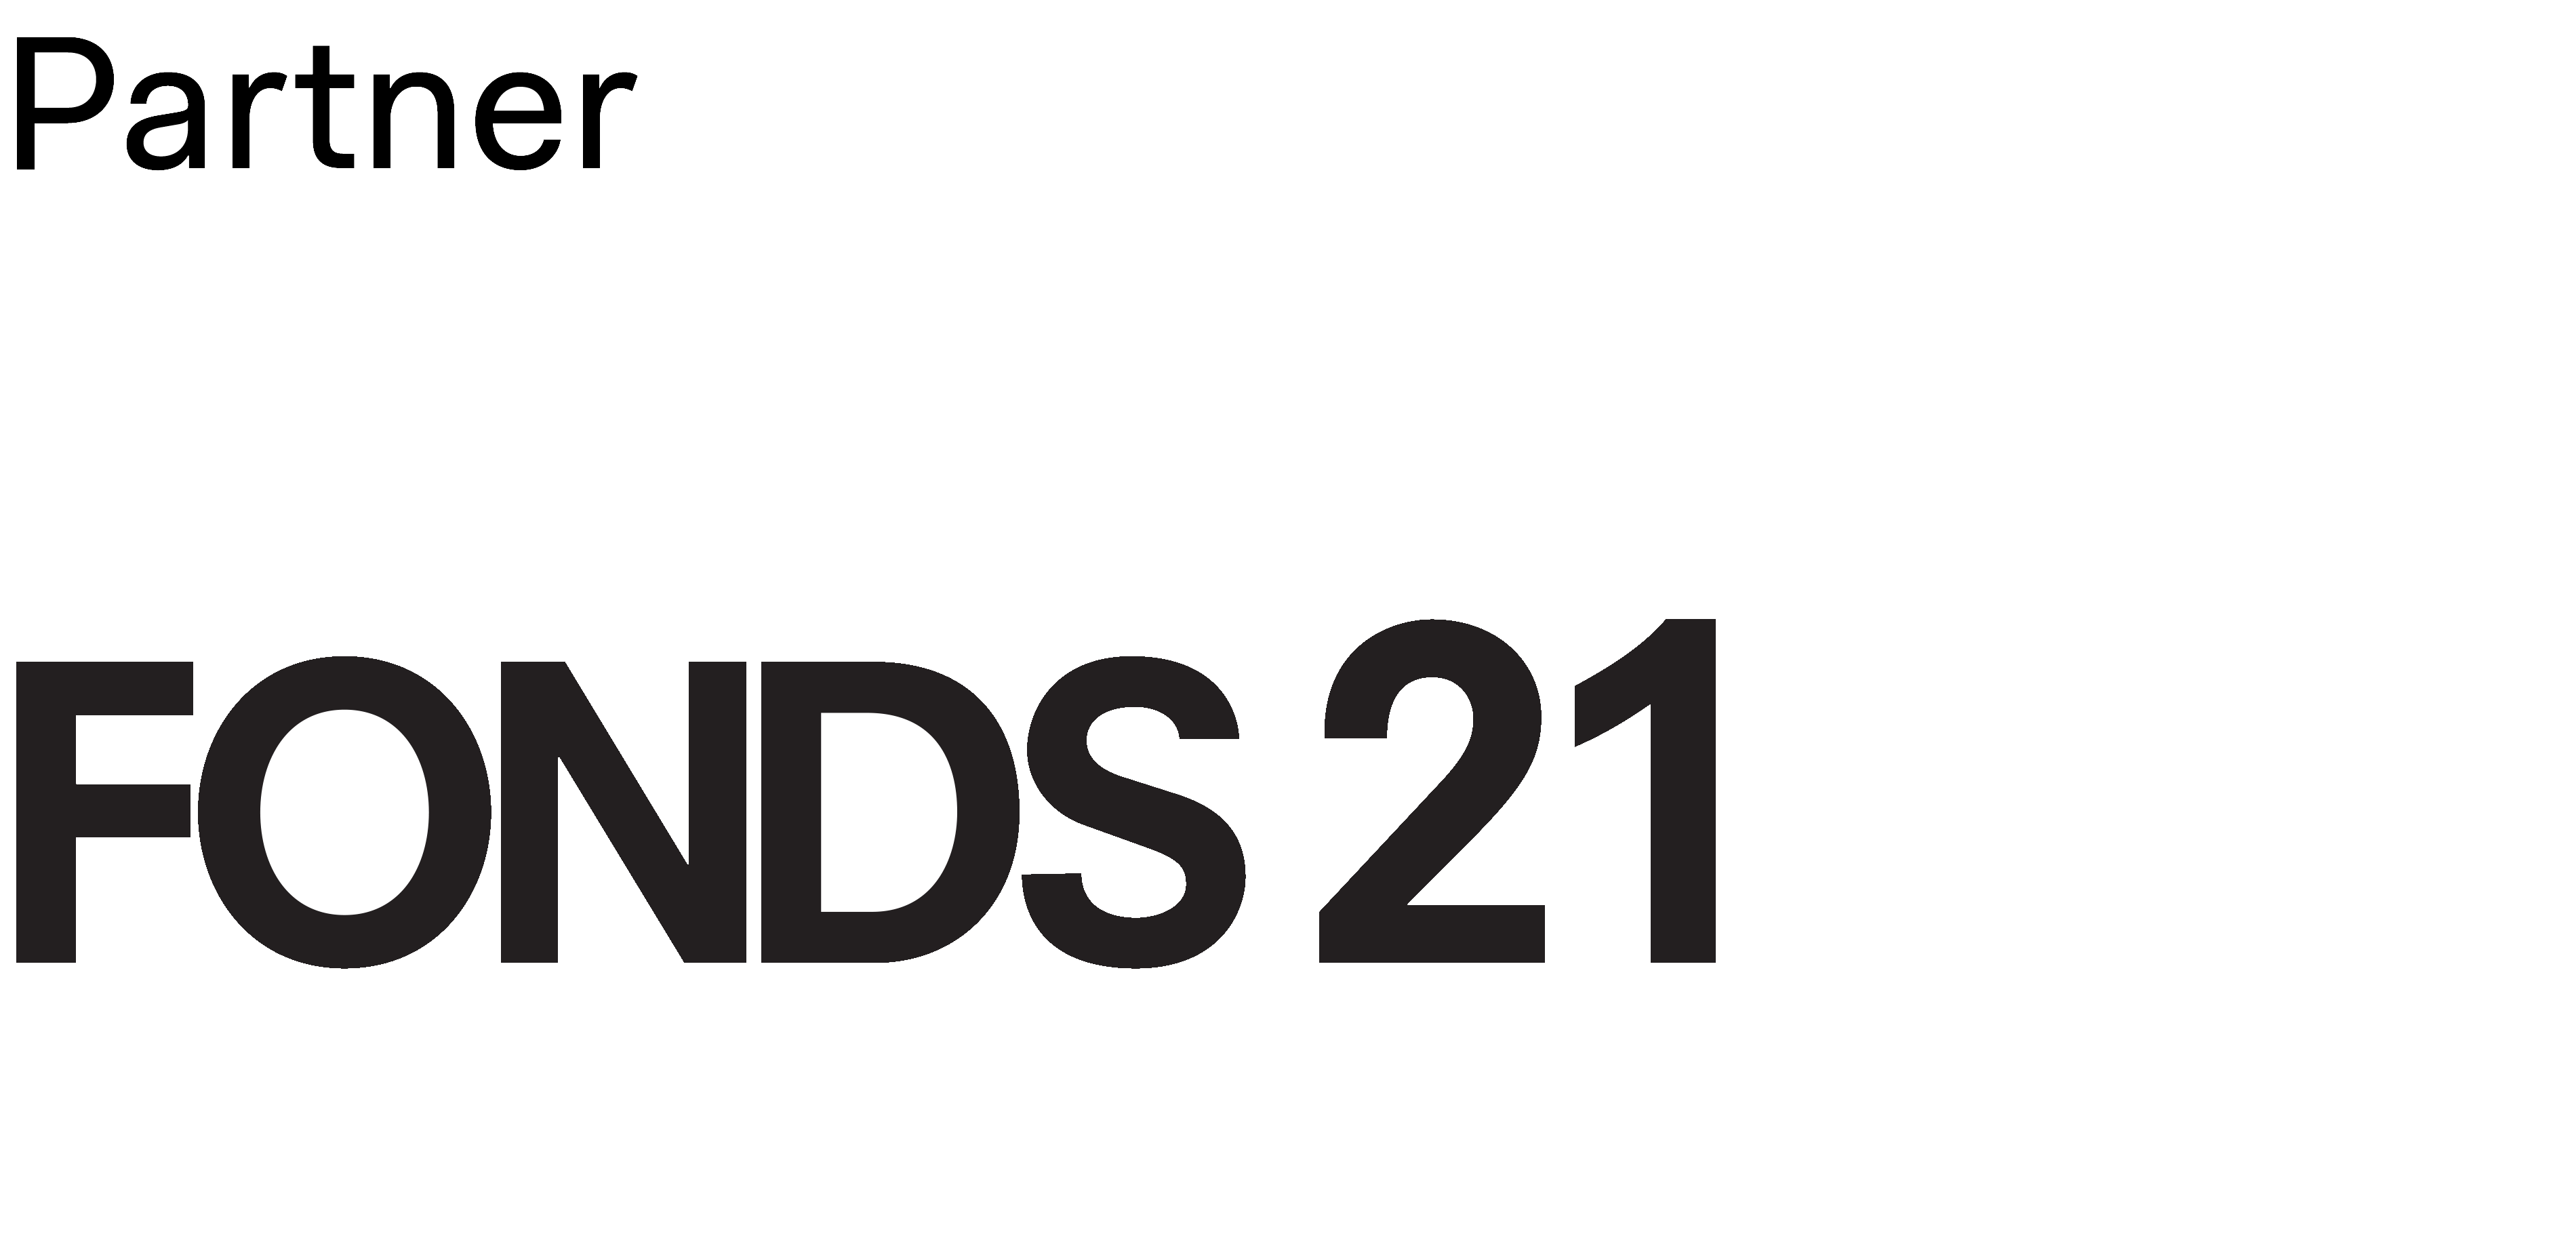 Fonds 21 logo met boventitel 'Partner'